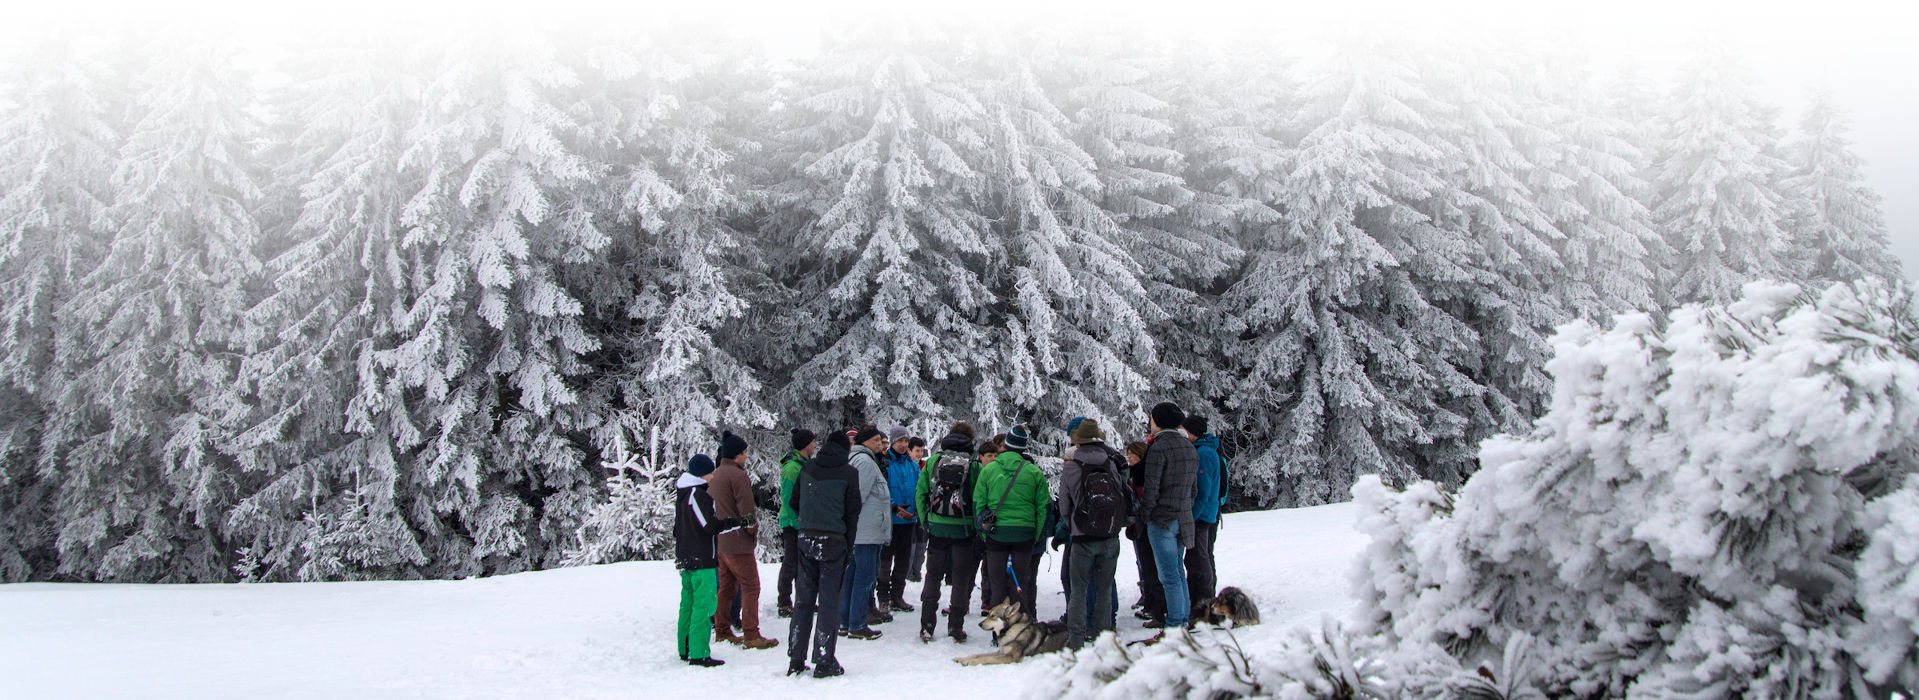 Winterlandschaft im Schwarzwald: Im Hintergrund schneebedeckte Nadelbäume, im Vordergrund auf einer Schneefläche eine Gruppe winterlich gekleideter Personen und ein Hund. Die Menschen scheinen miteinander zu reden, sie stehen einander zugewandt beisammen.